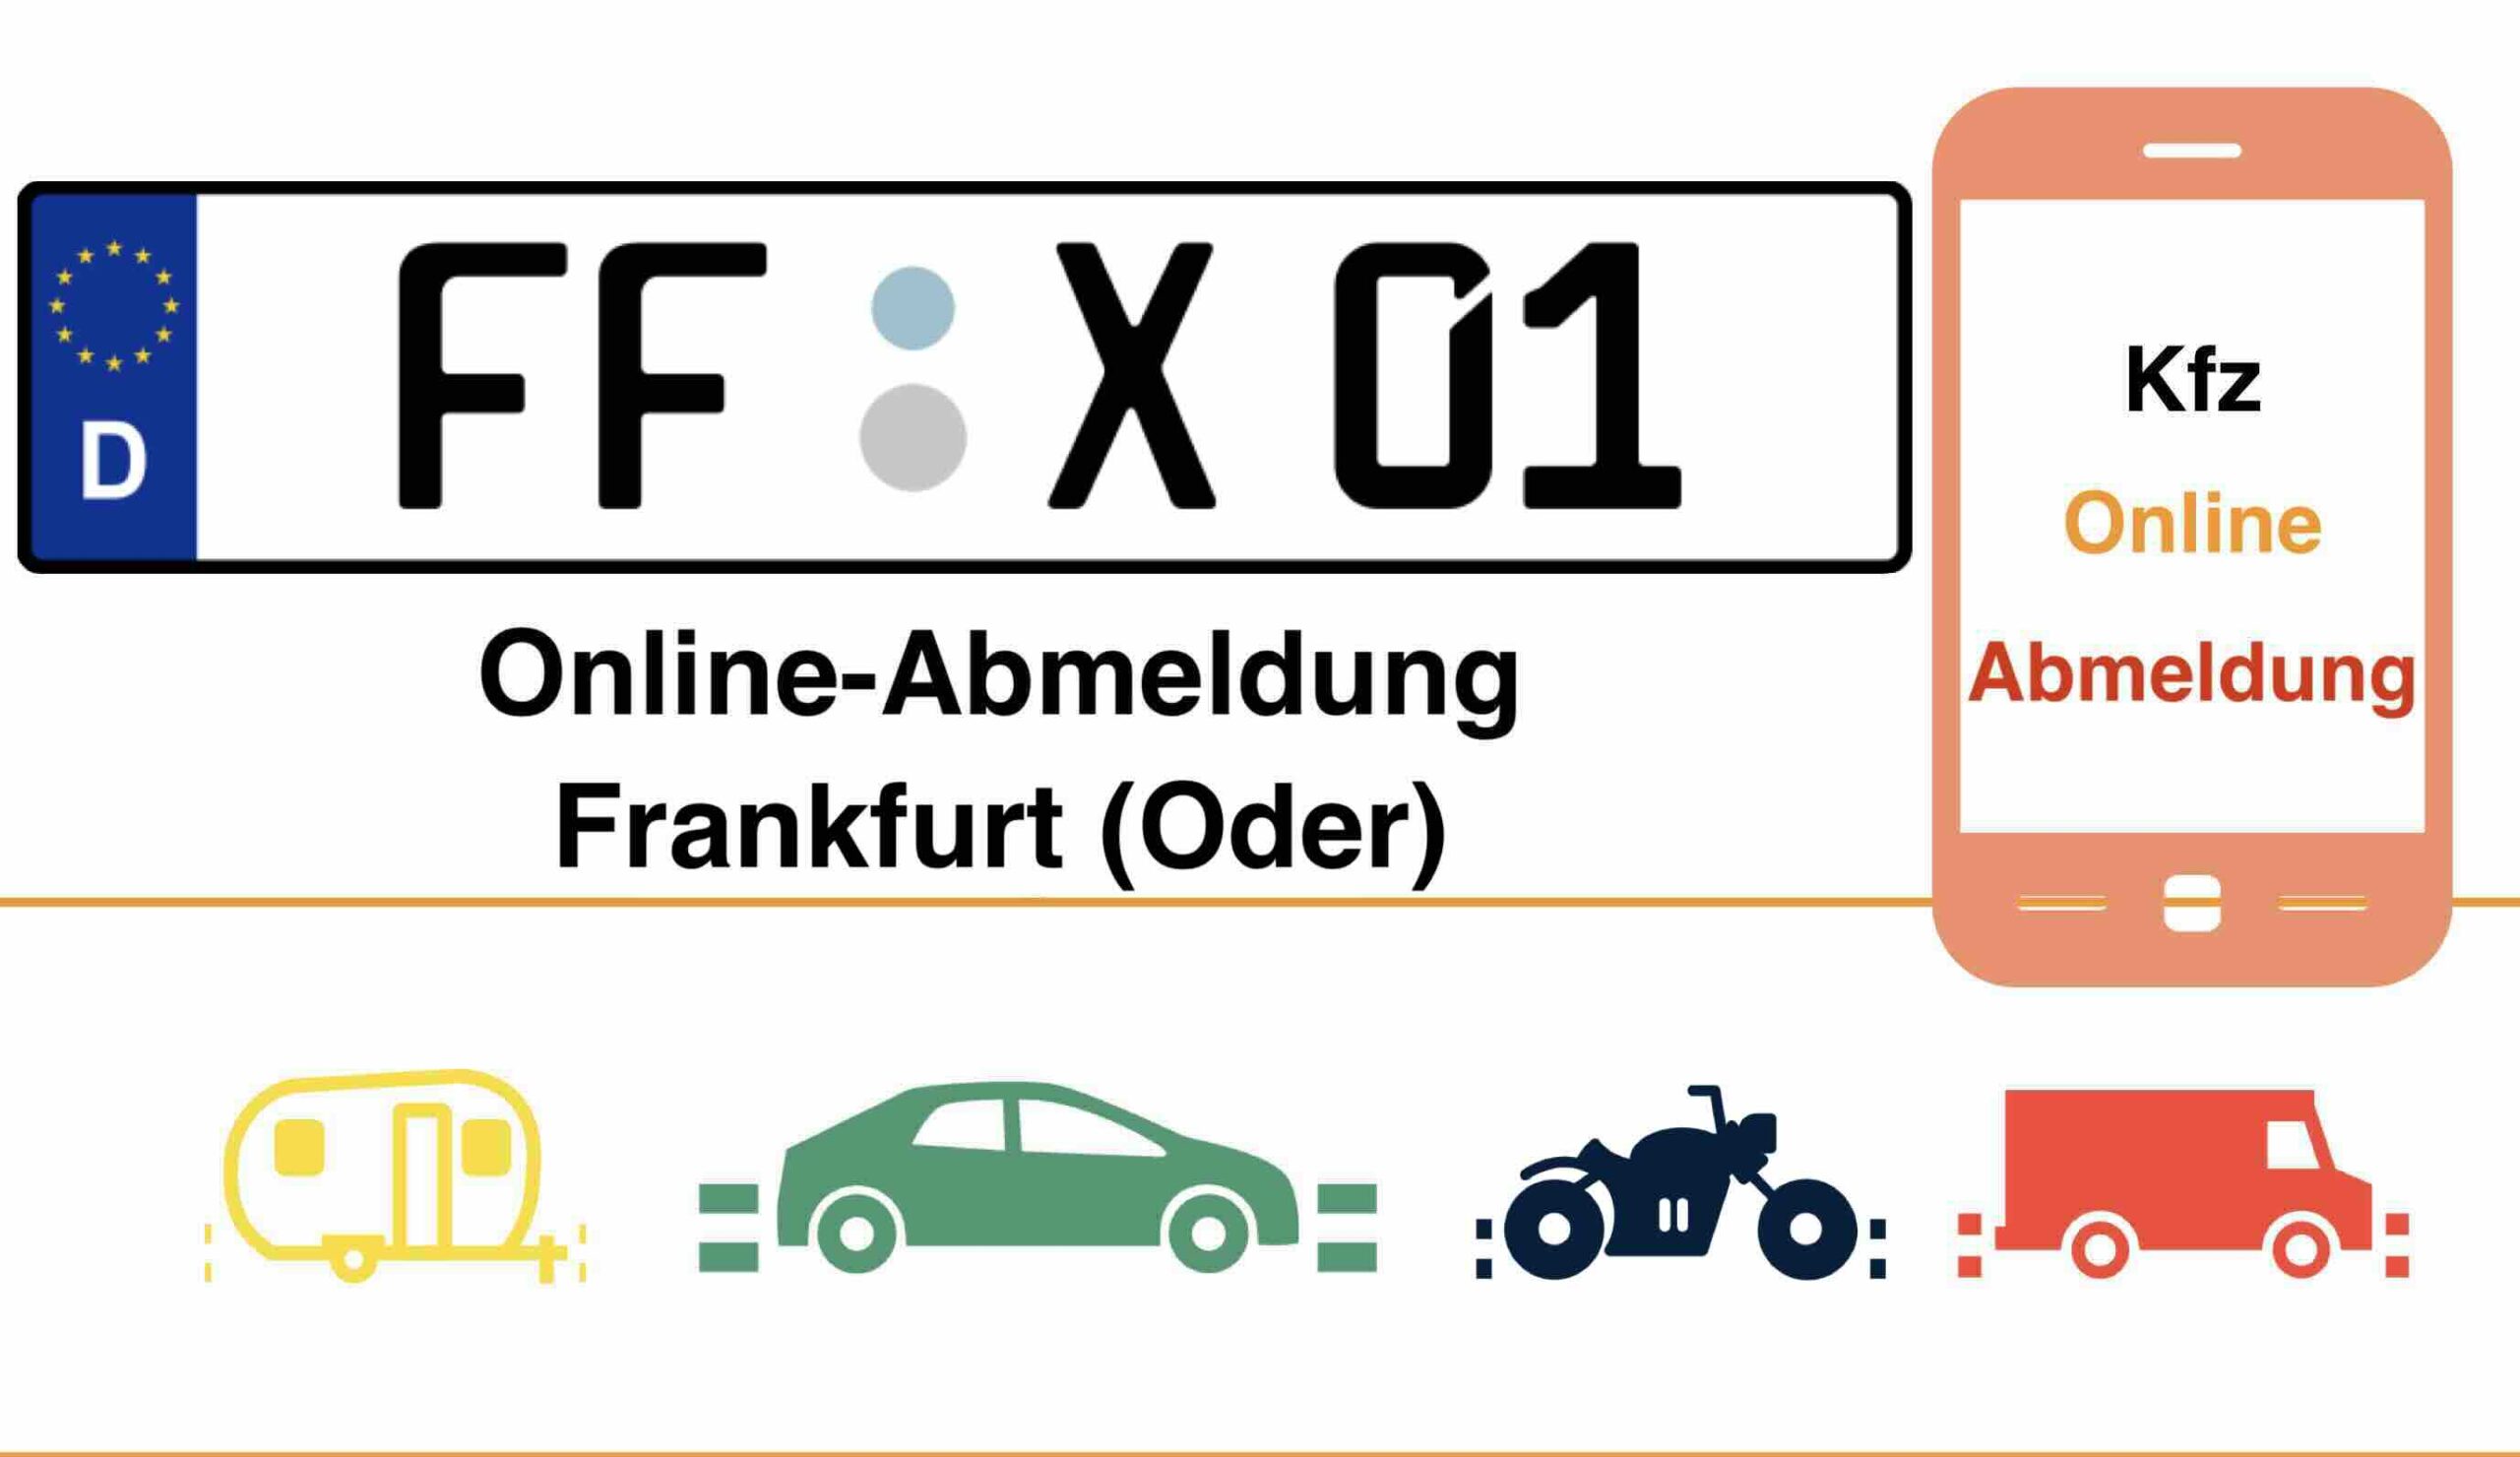 Online-Abmeldung in Frankfurt (Oder) 